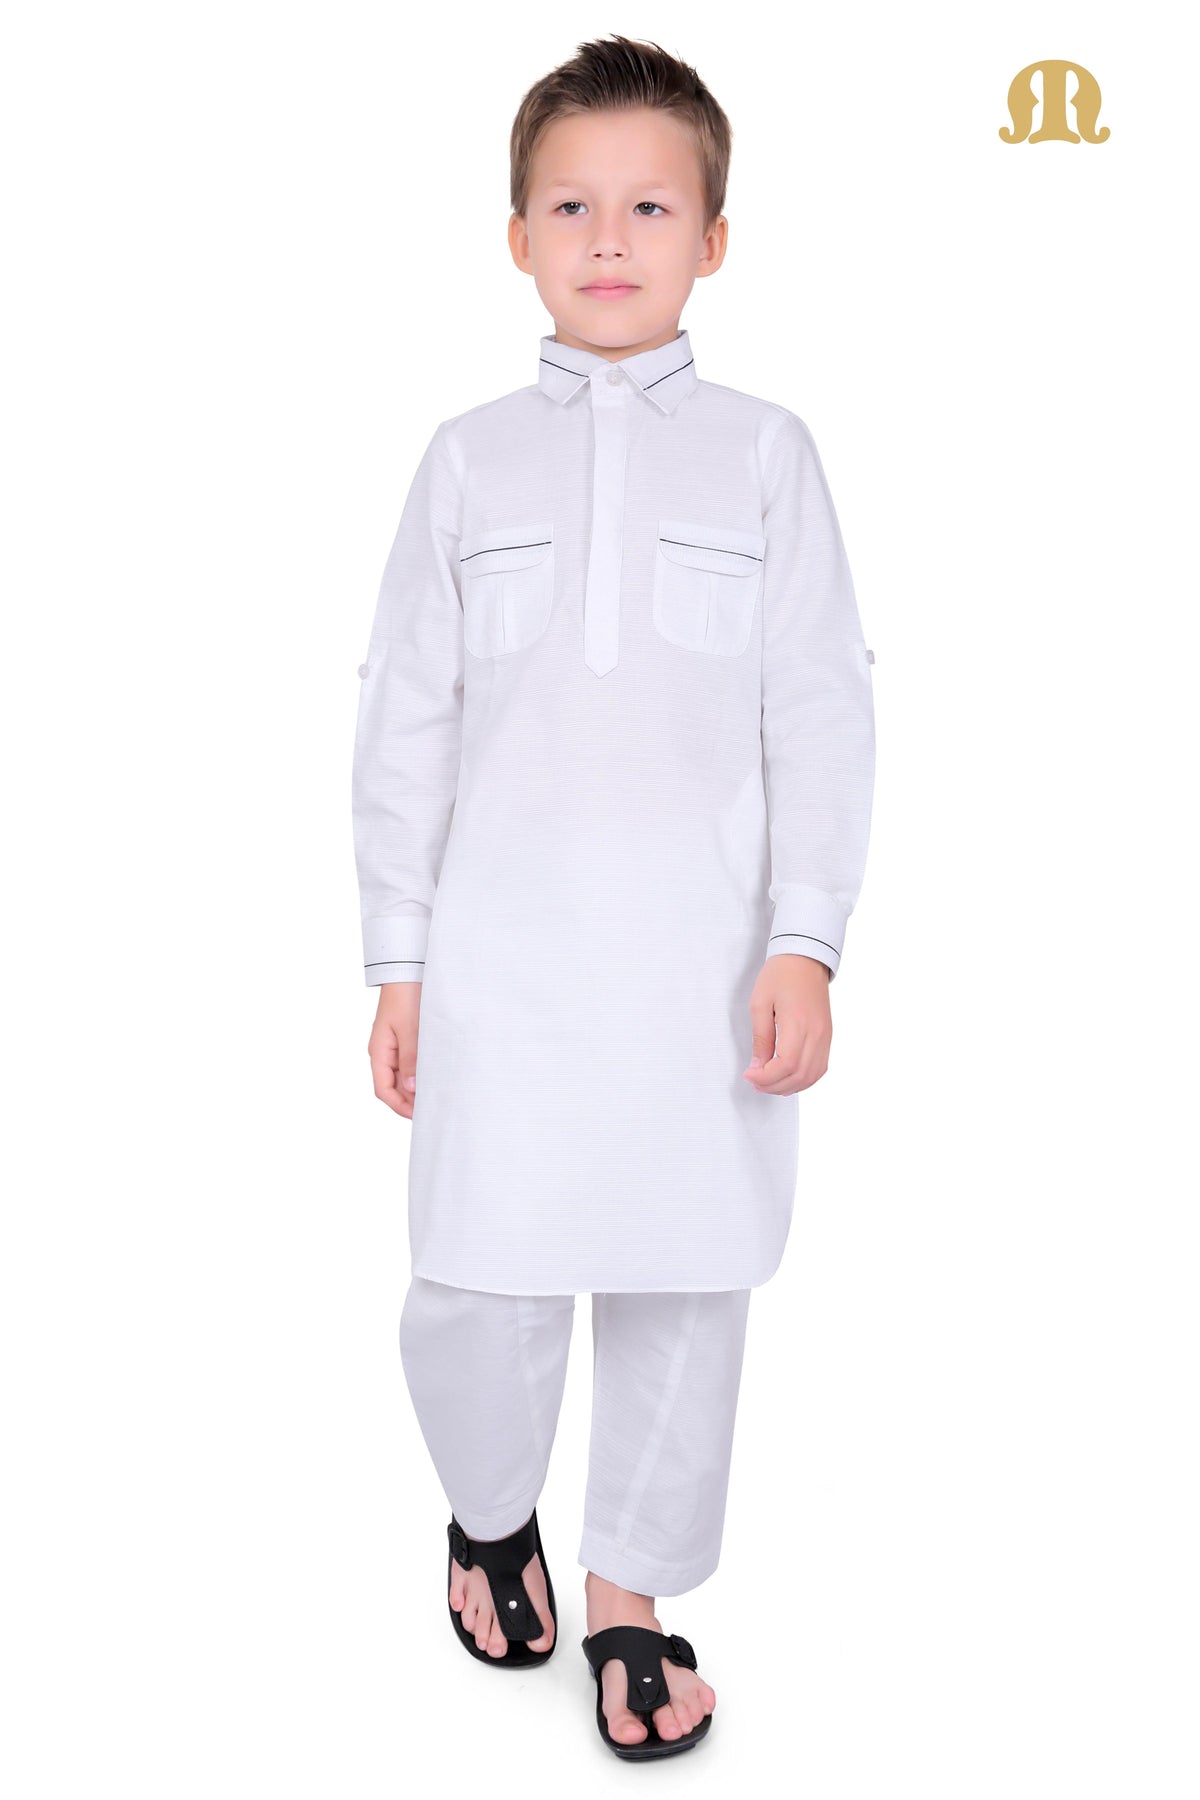 White Riwaya Pathani Suit for Kids